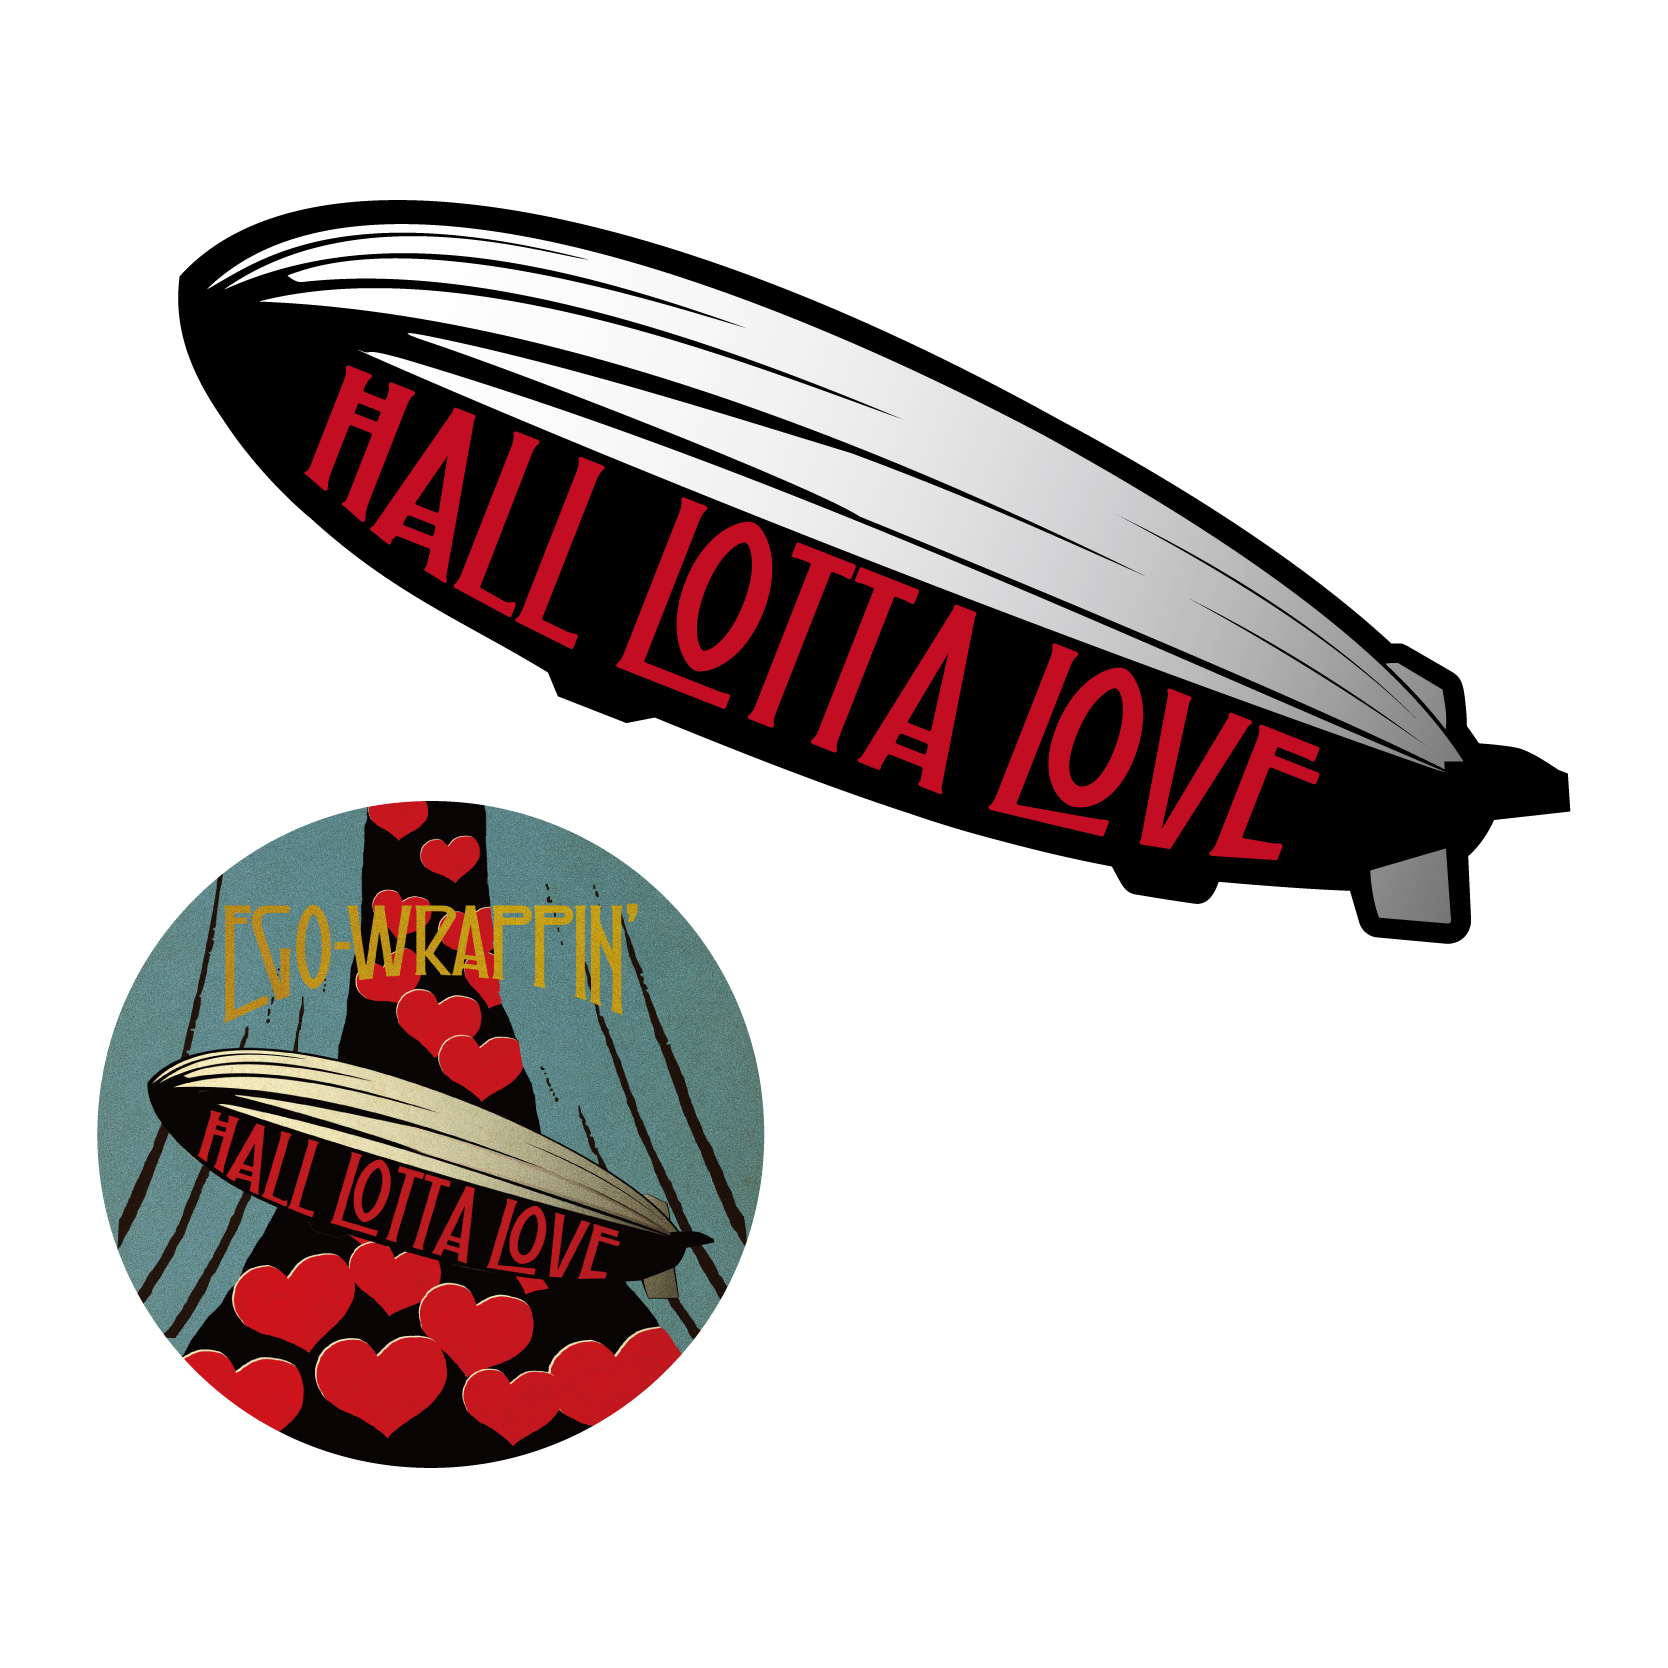 HALL LOTTA LOVE ステッカーセット -飛行船セット-